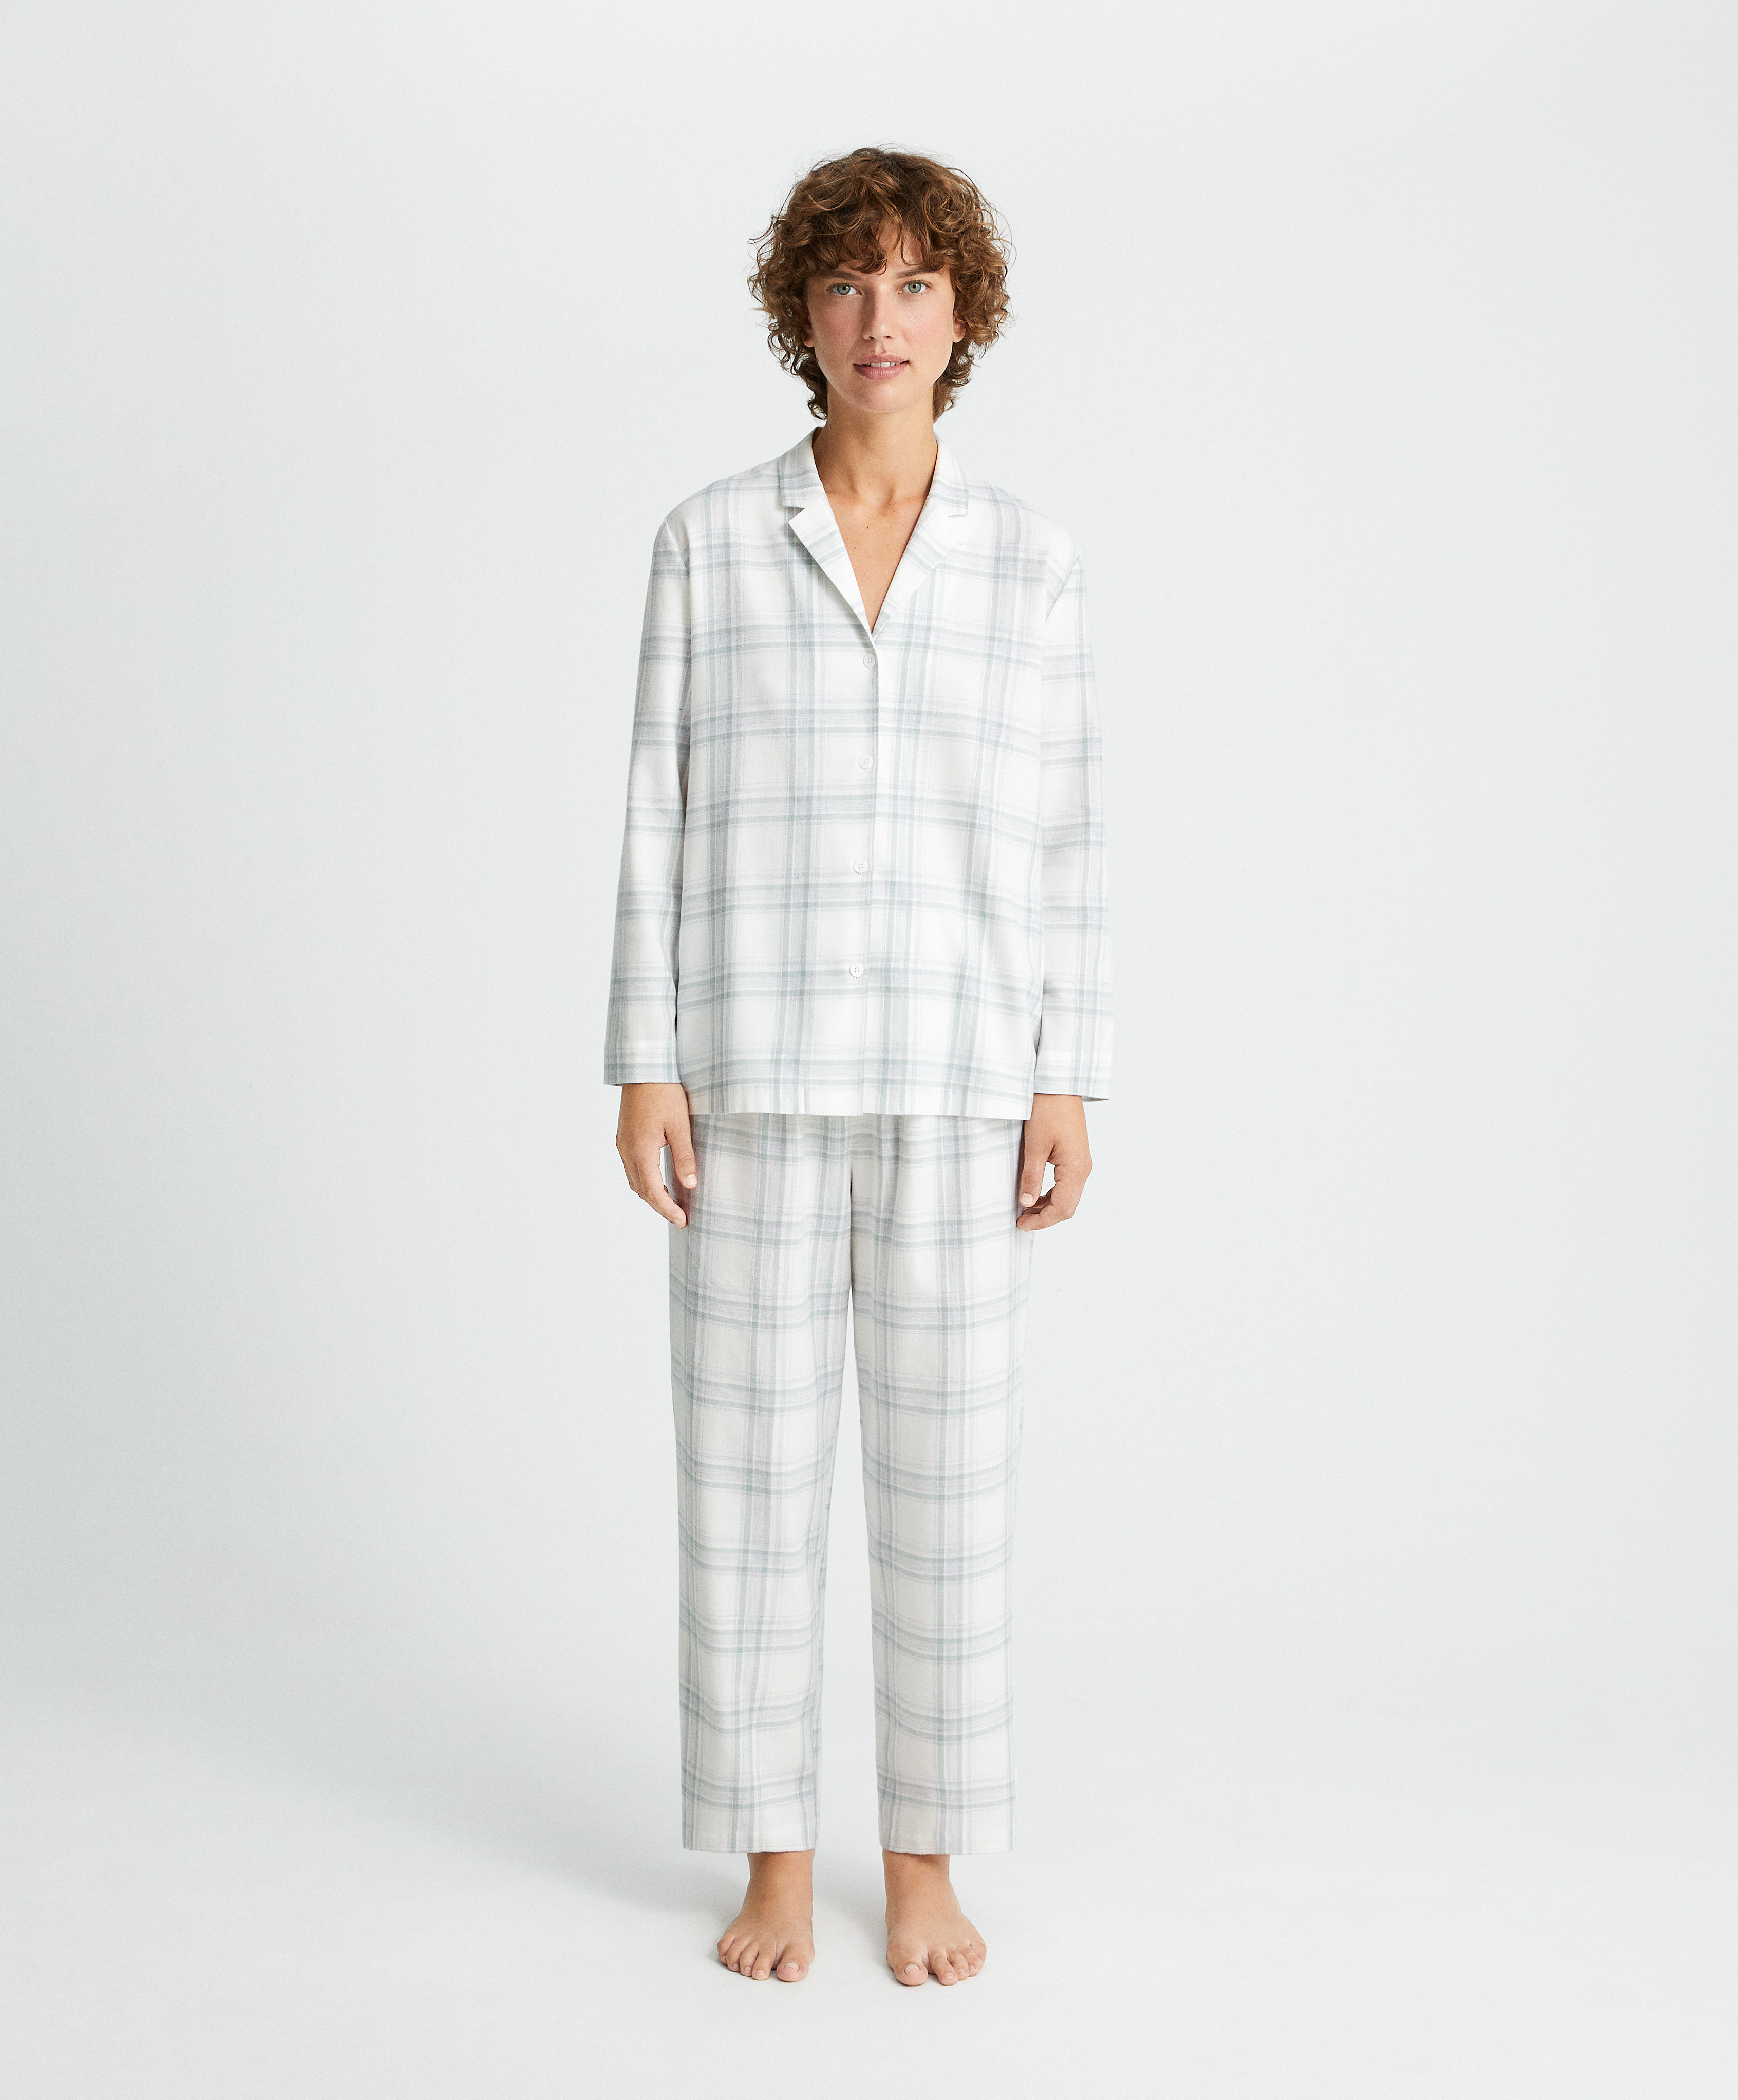 Zweiteiliger Hemdpyjama aus 100 % Baumwolle mit Karos